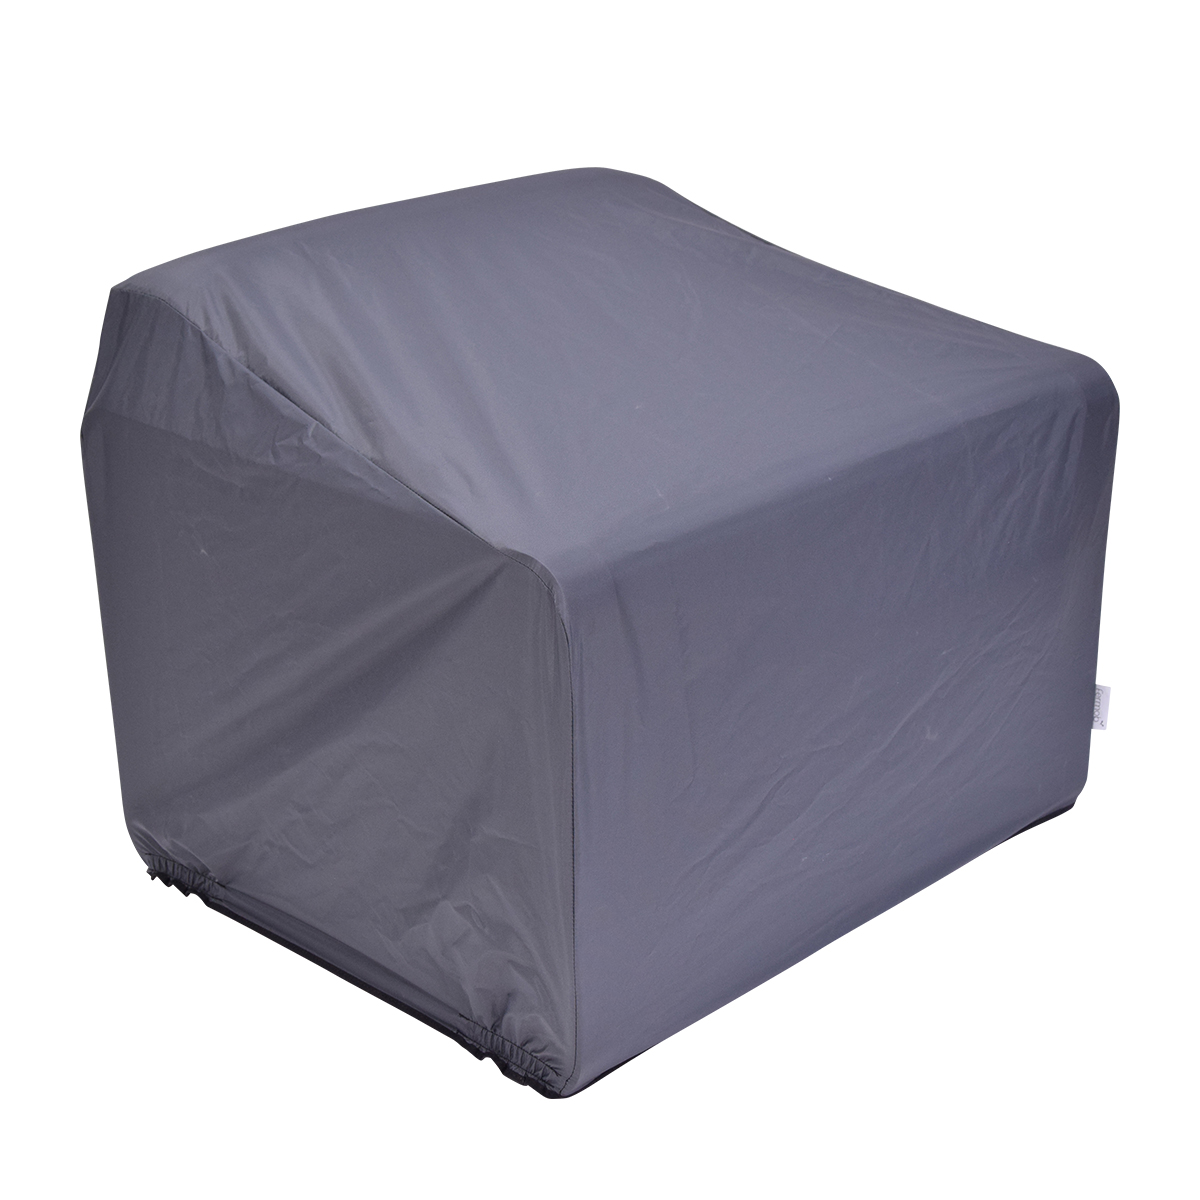 Fermob - Bellevie Outdoor-Sessel Schutzhülle - kohle/UV-beständig/wasserabweisend/reißfest/LxBxH 85x75x71cm von Fermob